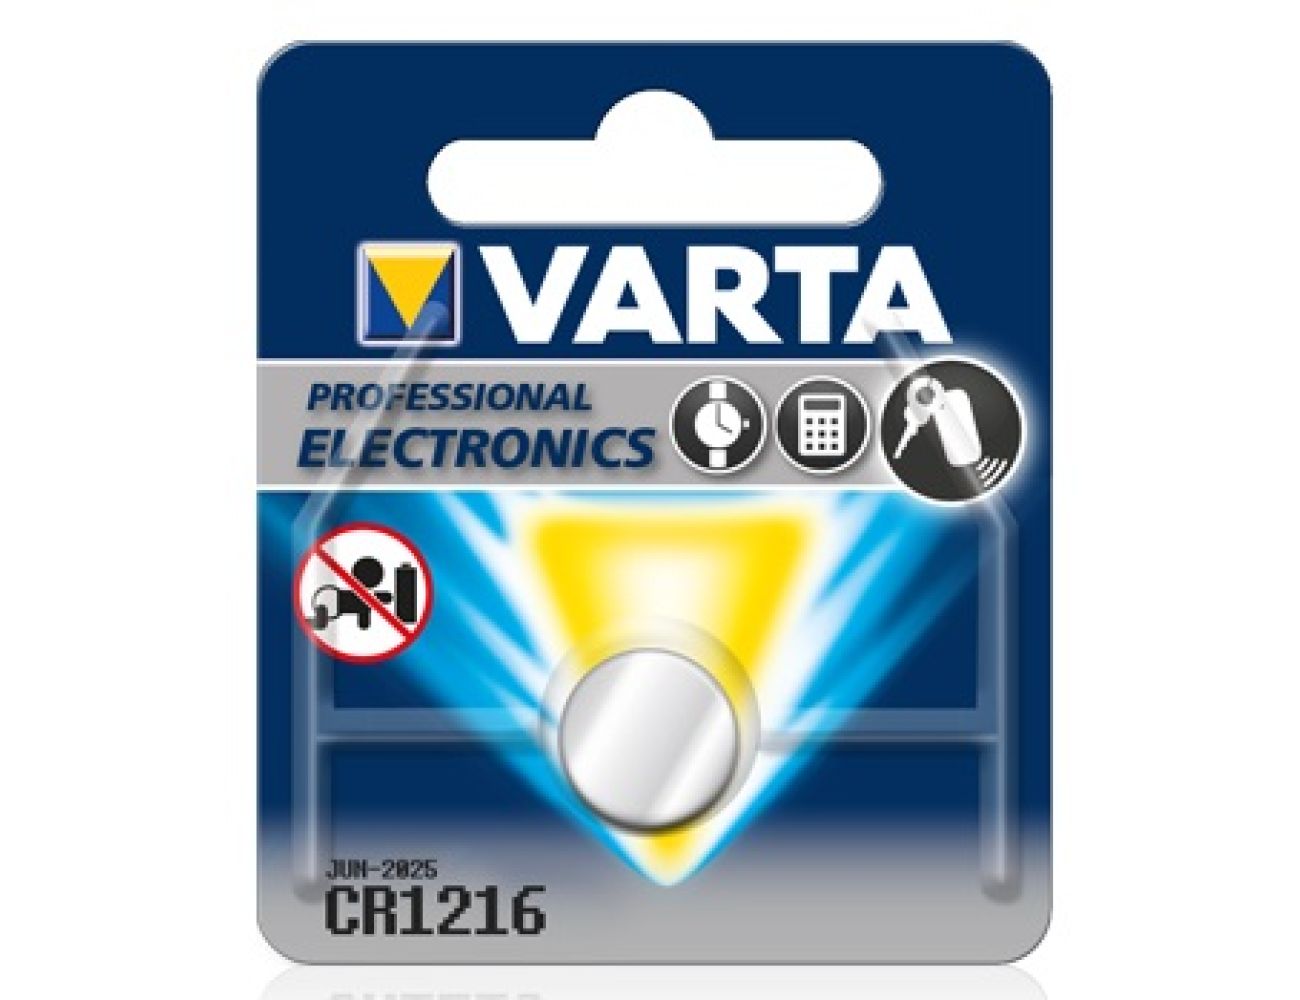 Батарейка Varta CR1216 Professional Electronics(25mAh, 3V, Литиевая) 06216101401